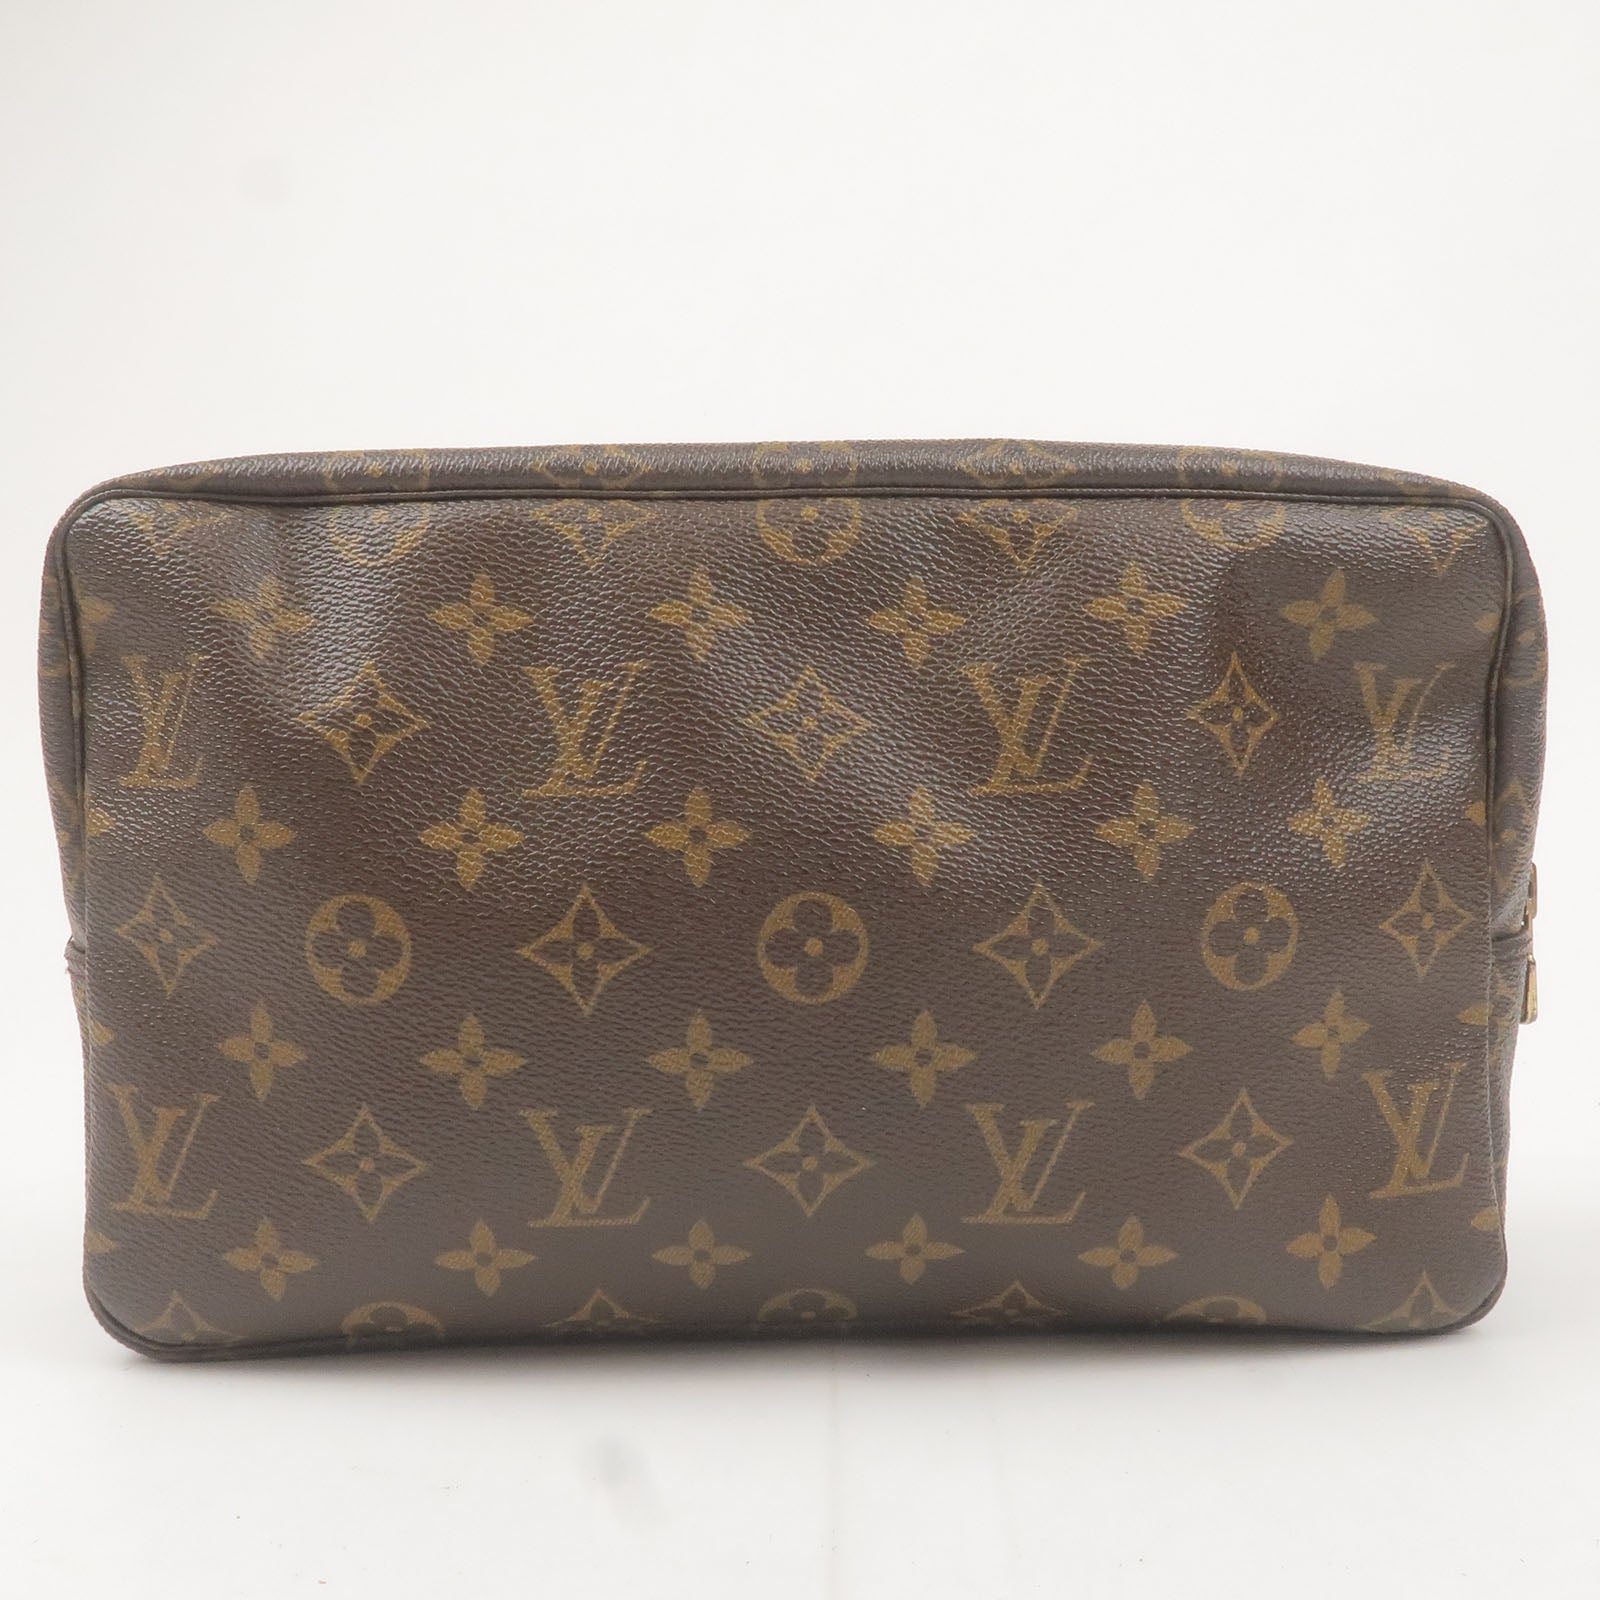 Louis Vuitton, Bags, Vintage Louis Vuitton Trousse Toilette 28 Bag